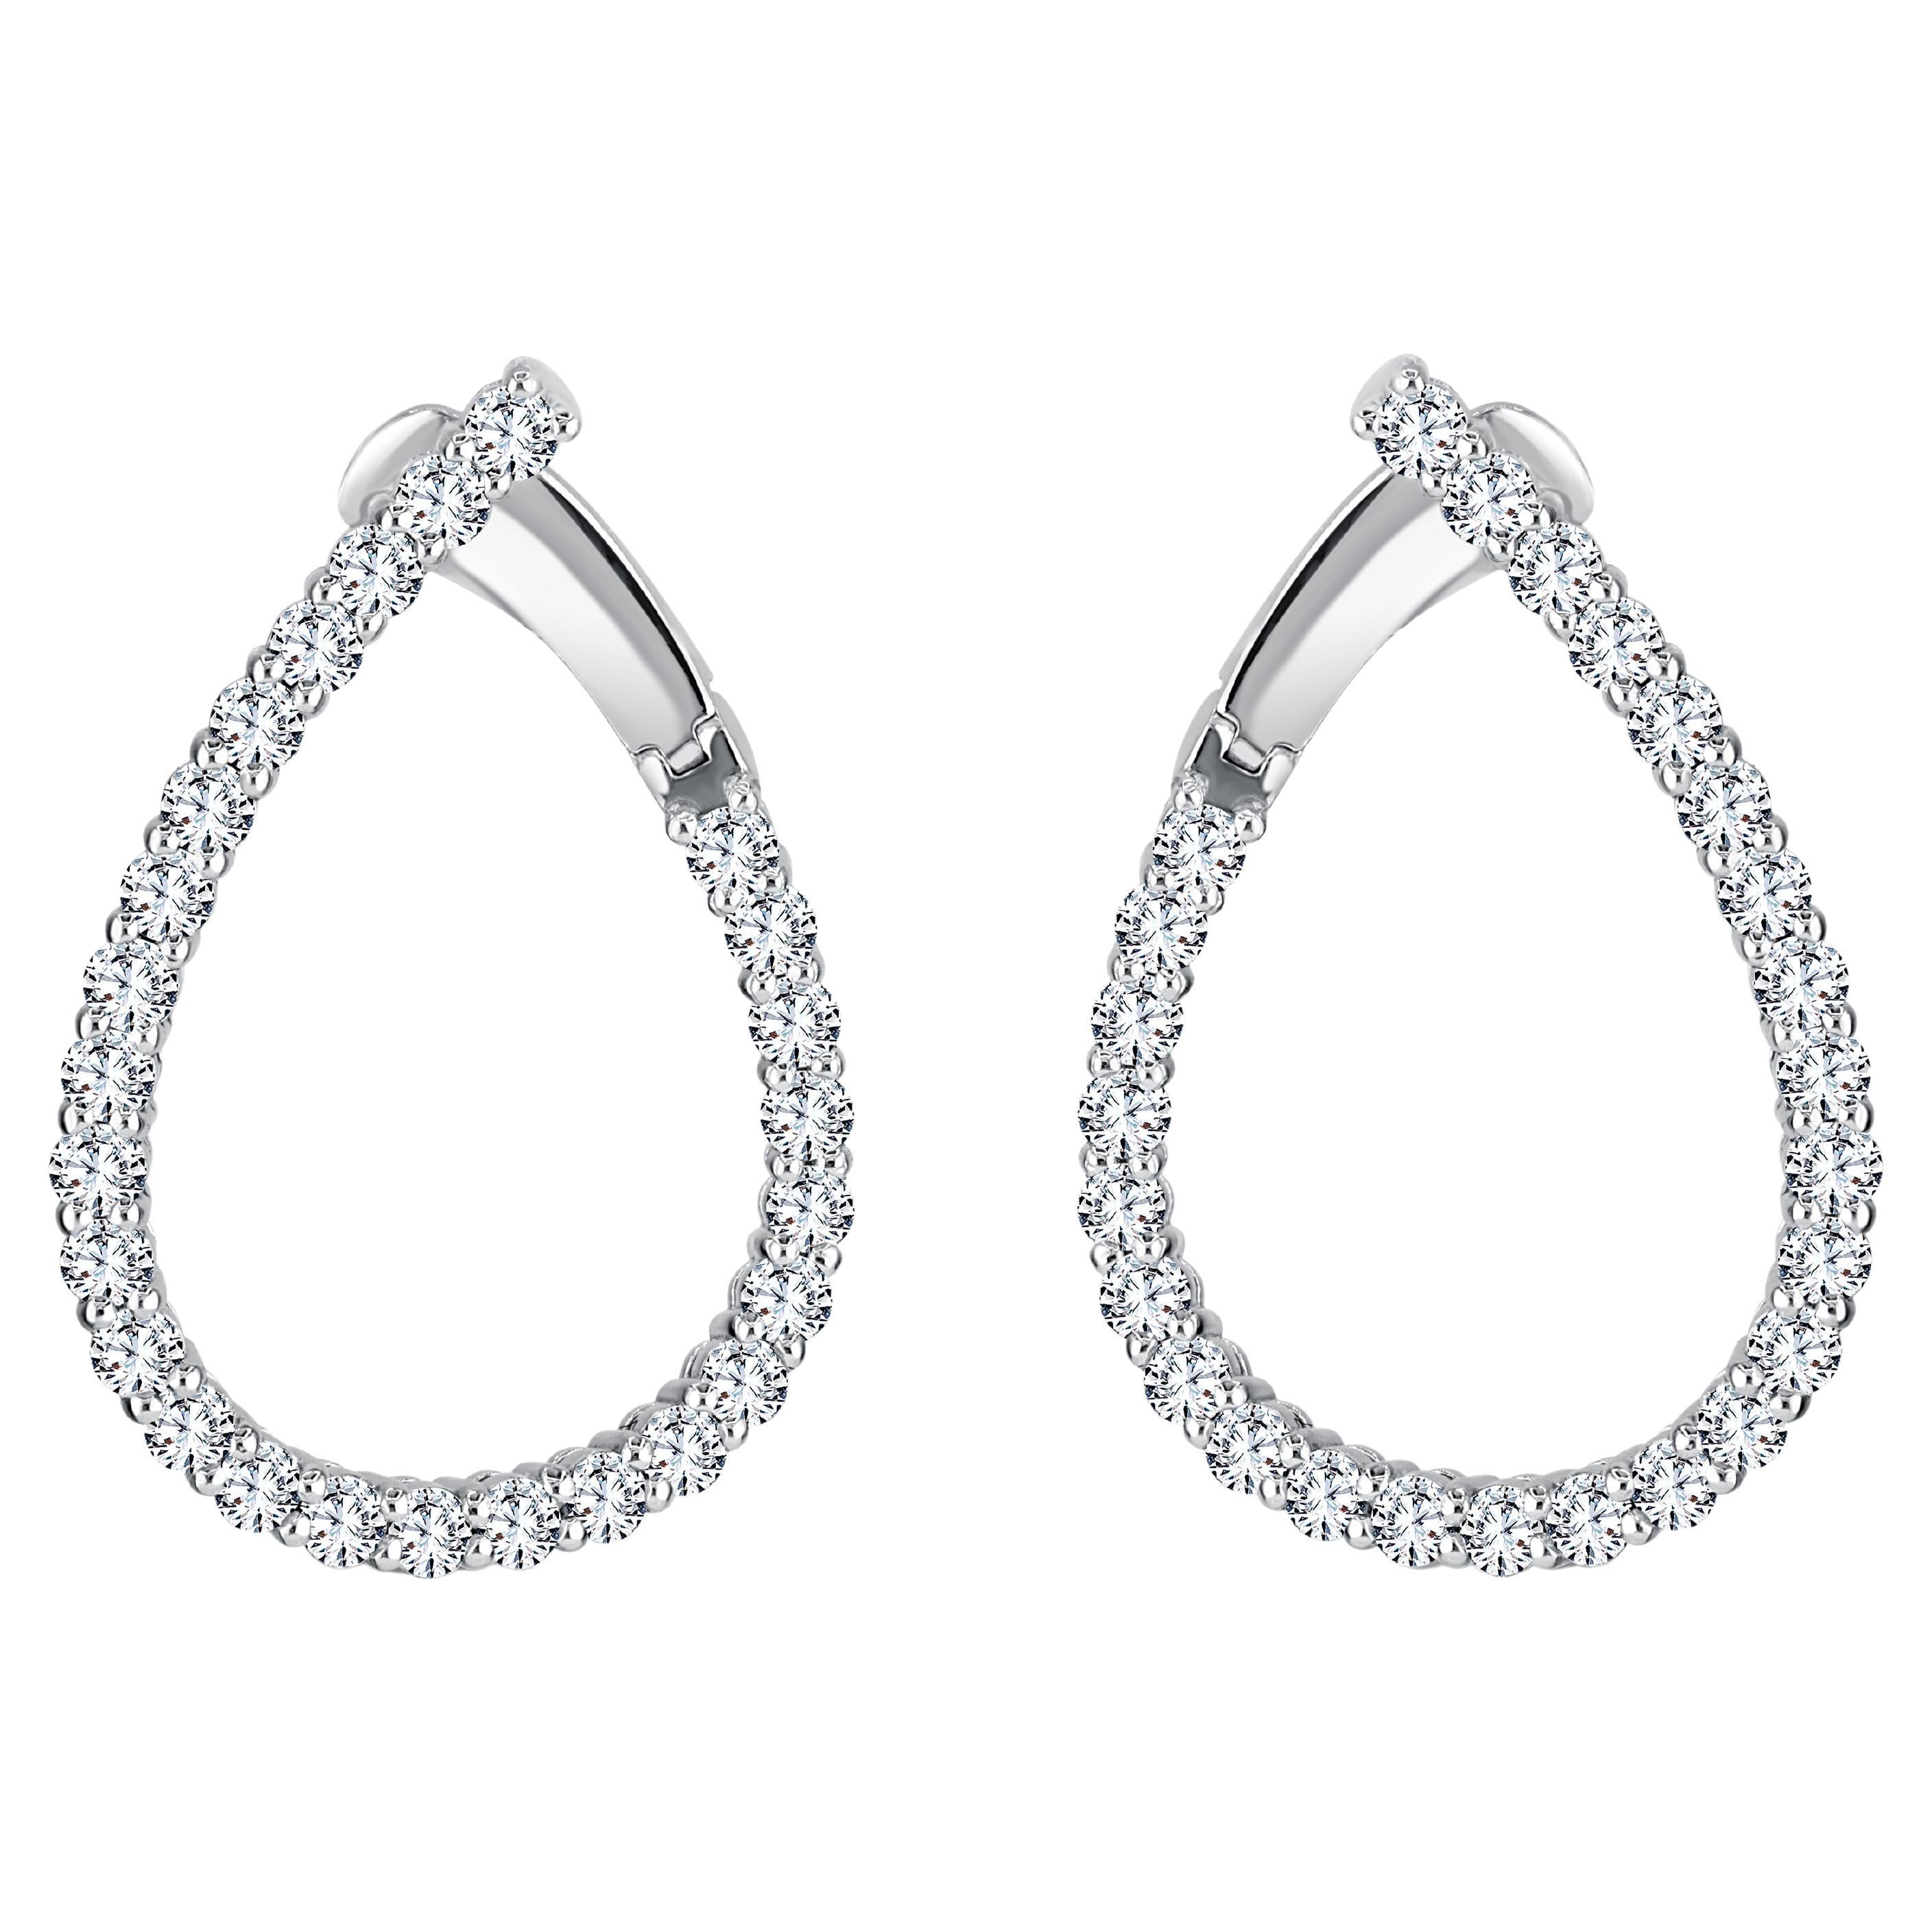 Dieses Paar Ohrringe präsentiert ein exquisites Arrangement aus 2,19 Karat runden weißen Diamanten, die elegant entlang der anmutig gedrehten, tropfenförmigen Reifchen platziert sind. Um einen sicheren und bequemen Sitz zu gewährleisten, dient ein